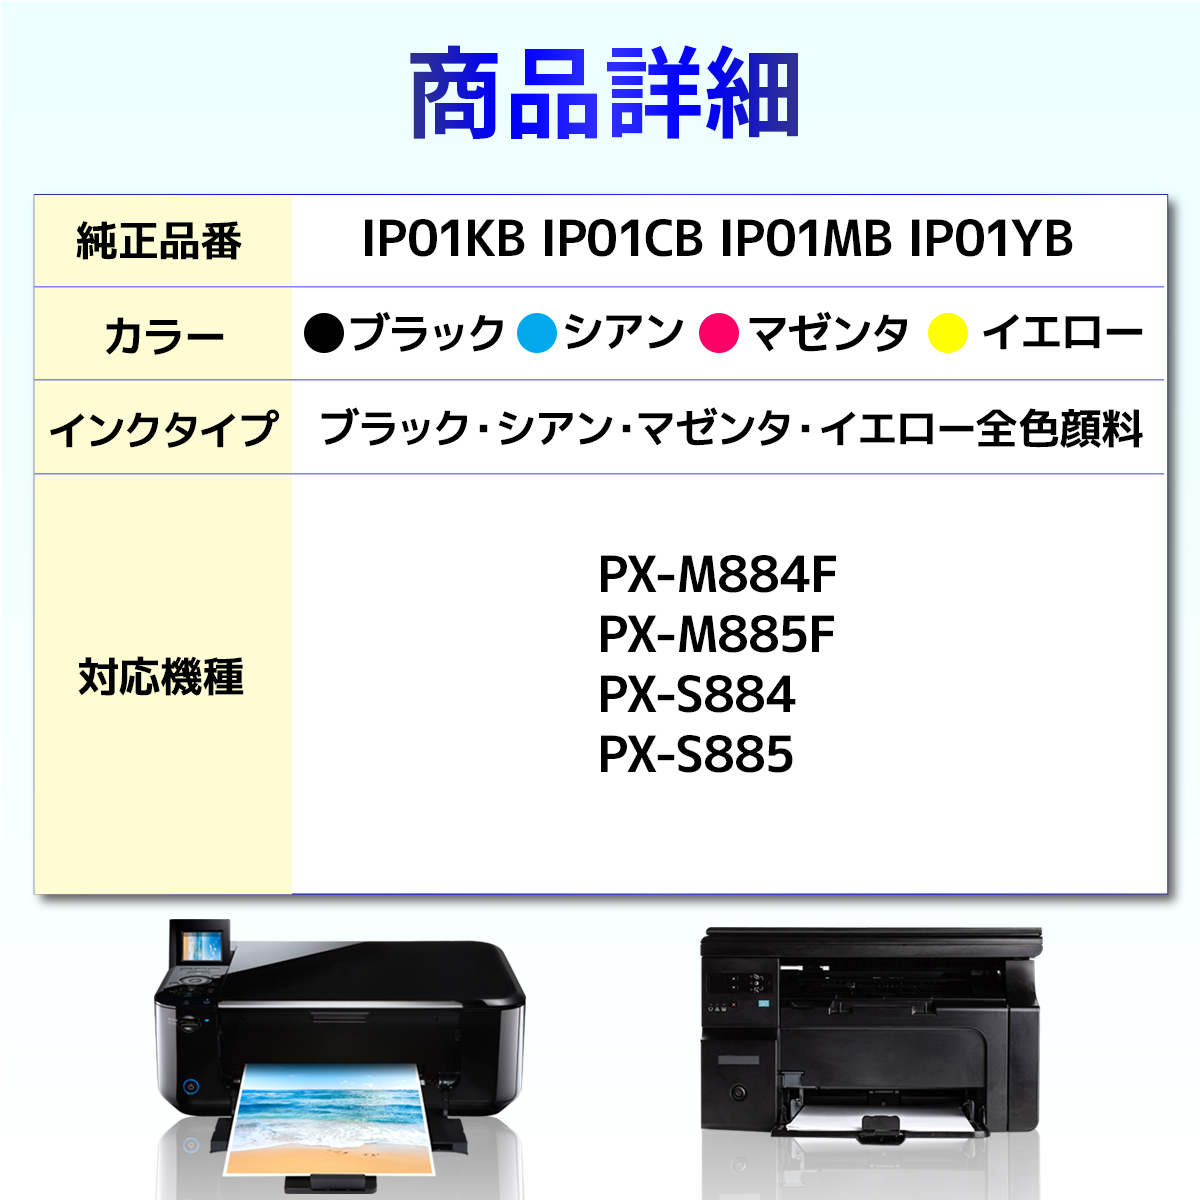 IP01　IP01KB　IP01CB　5個セット　PX-M885F　PX-M884F　EPSON　IP01MB　PX-S885　IP01YB　PX-S884　互換インクパック　エプソン